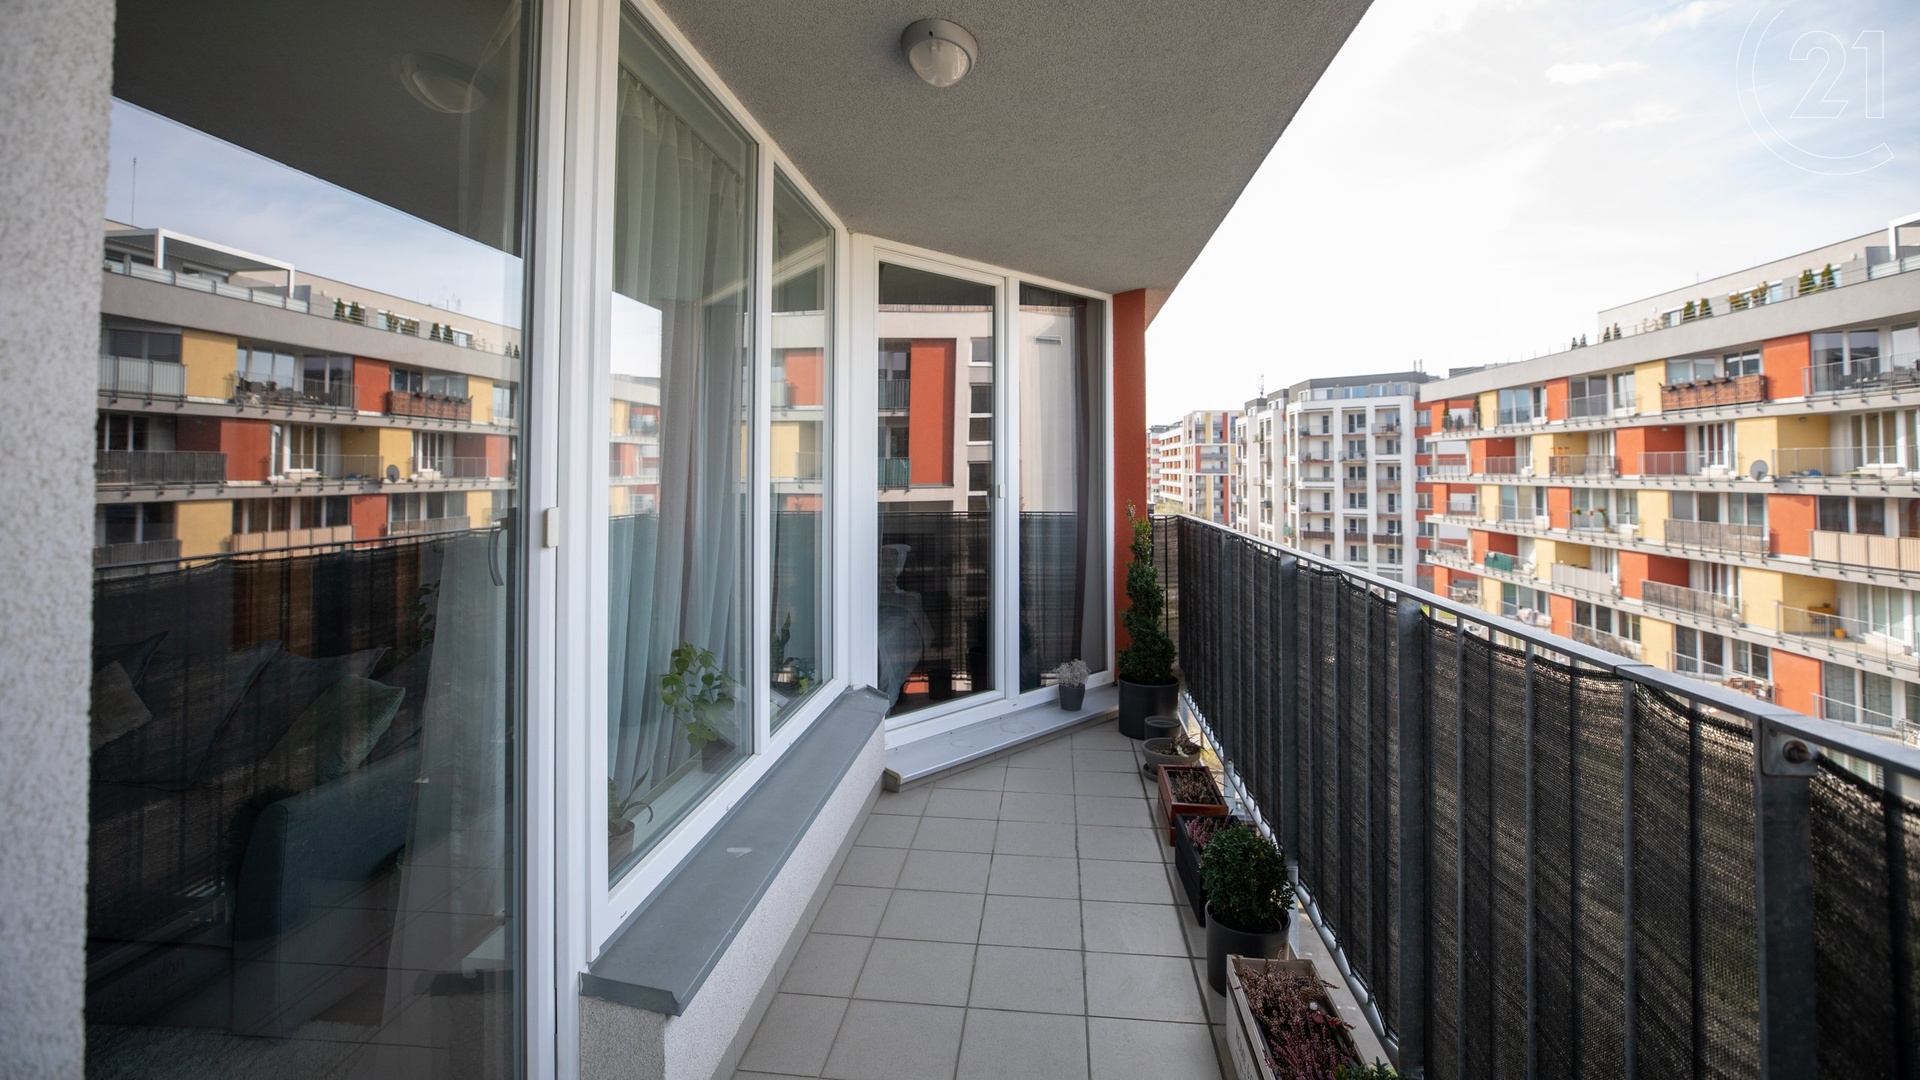 Pronájem bytu 2+kk s balkonem, garážovým stáním, a sklepem, 58 m² - Praha - Zličín